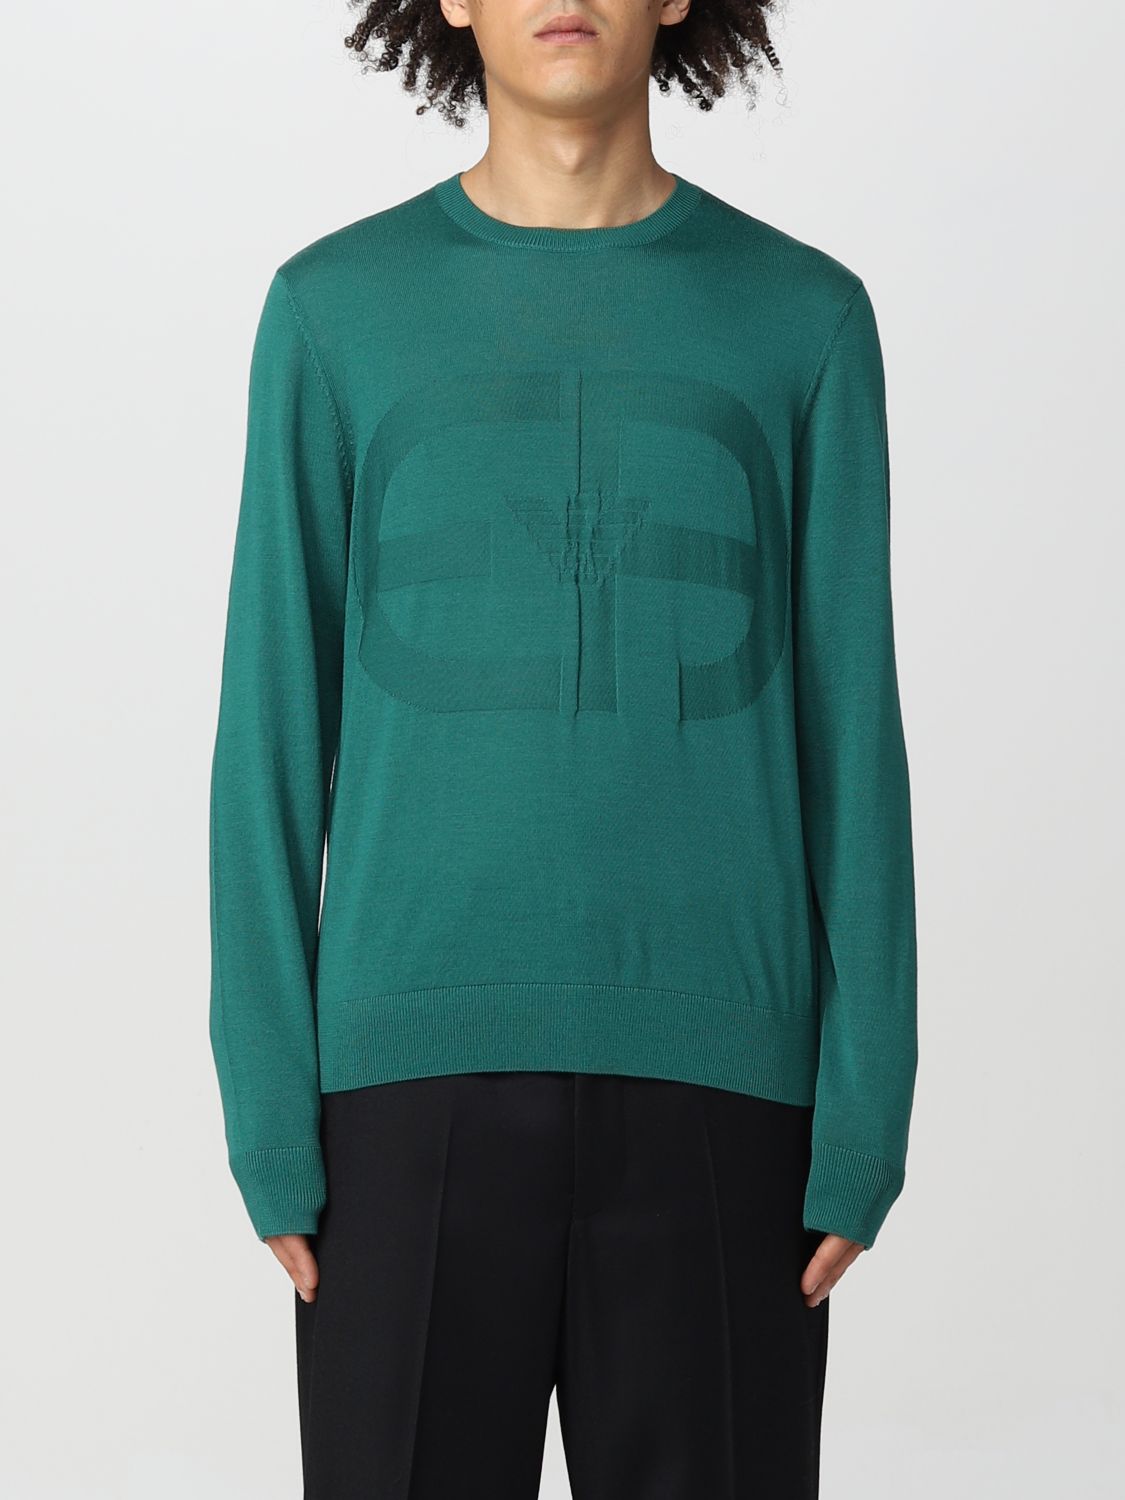 EMPORIO ARMANI: sweater for man - Green | Emporio Armani sweater ...